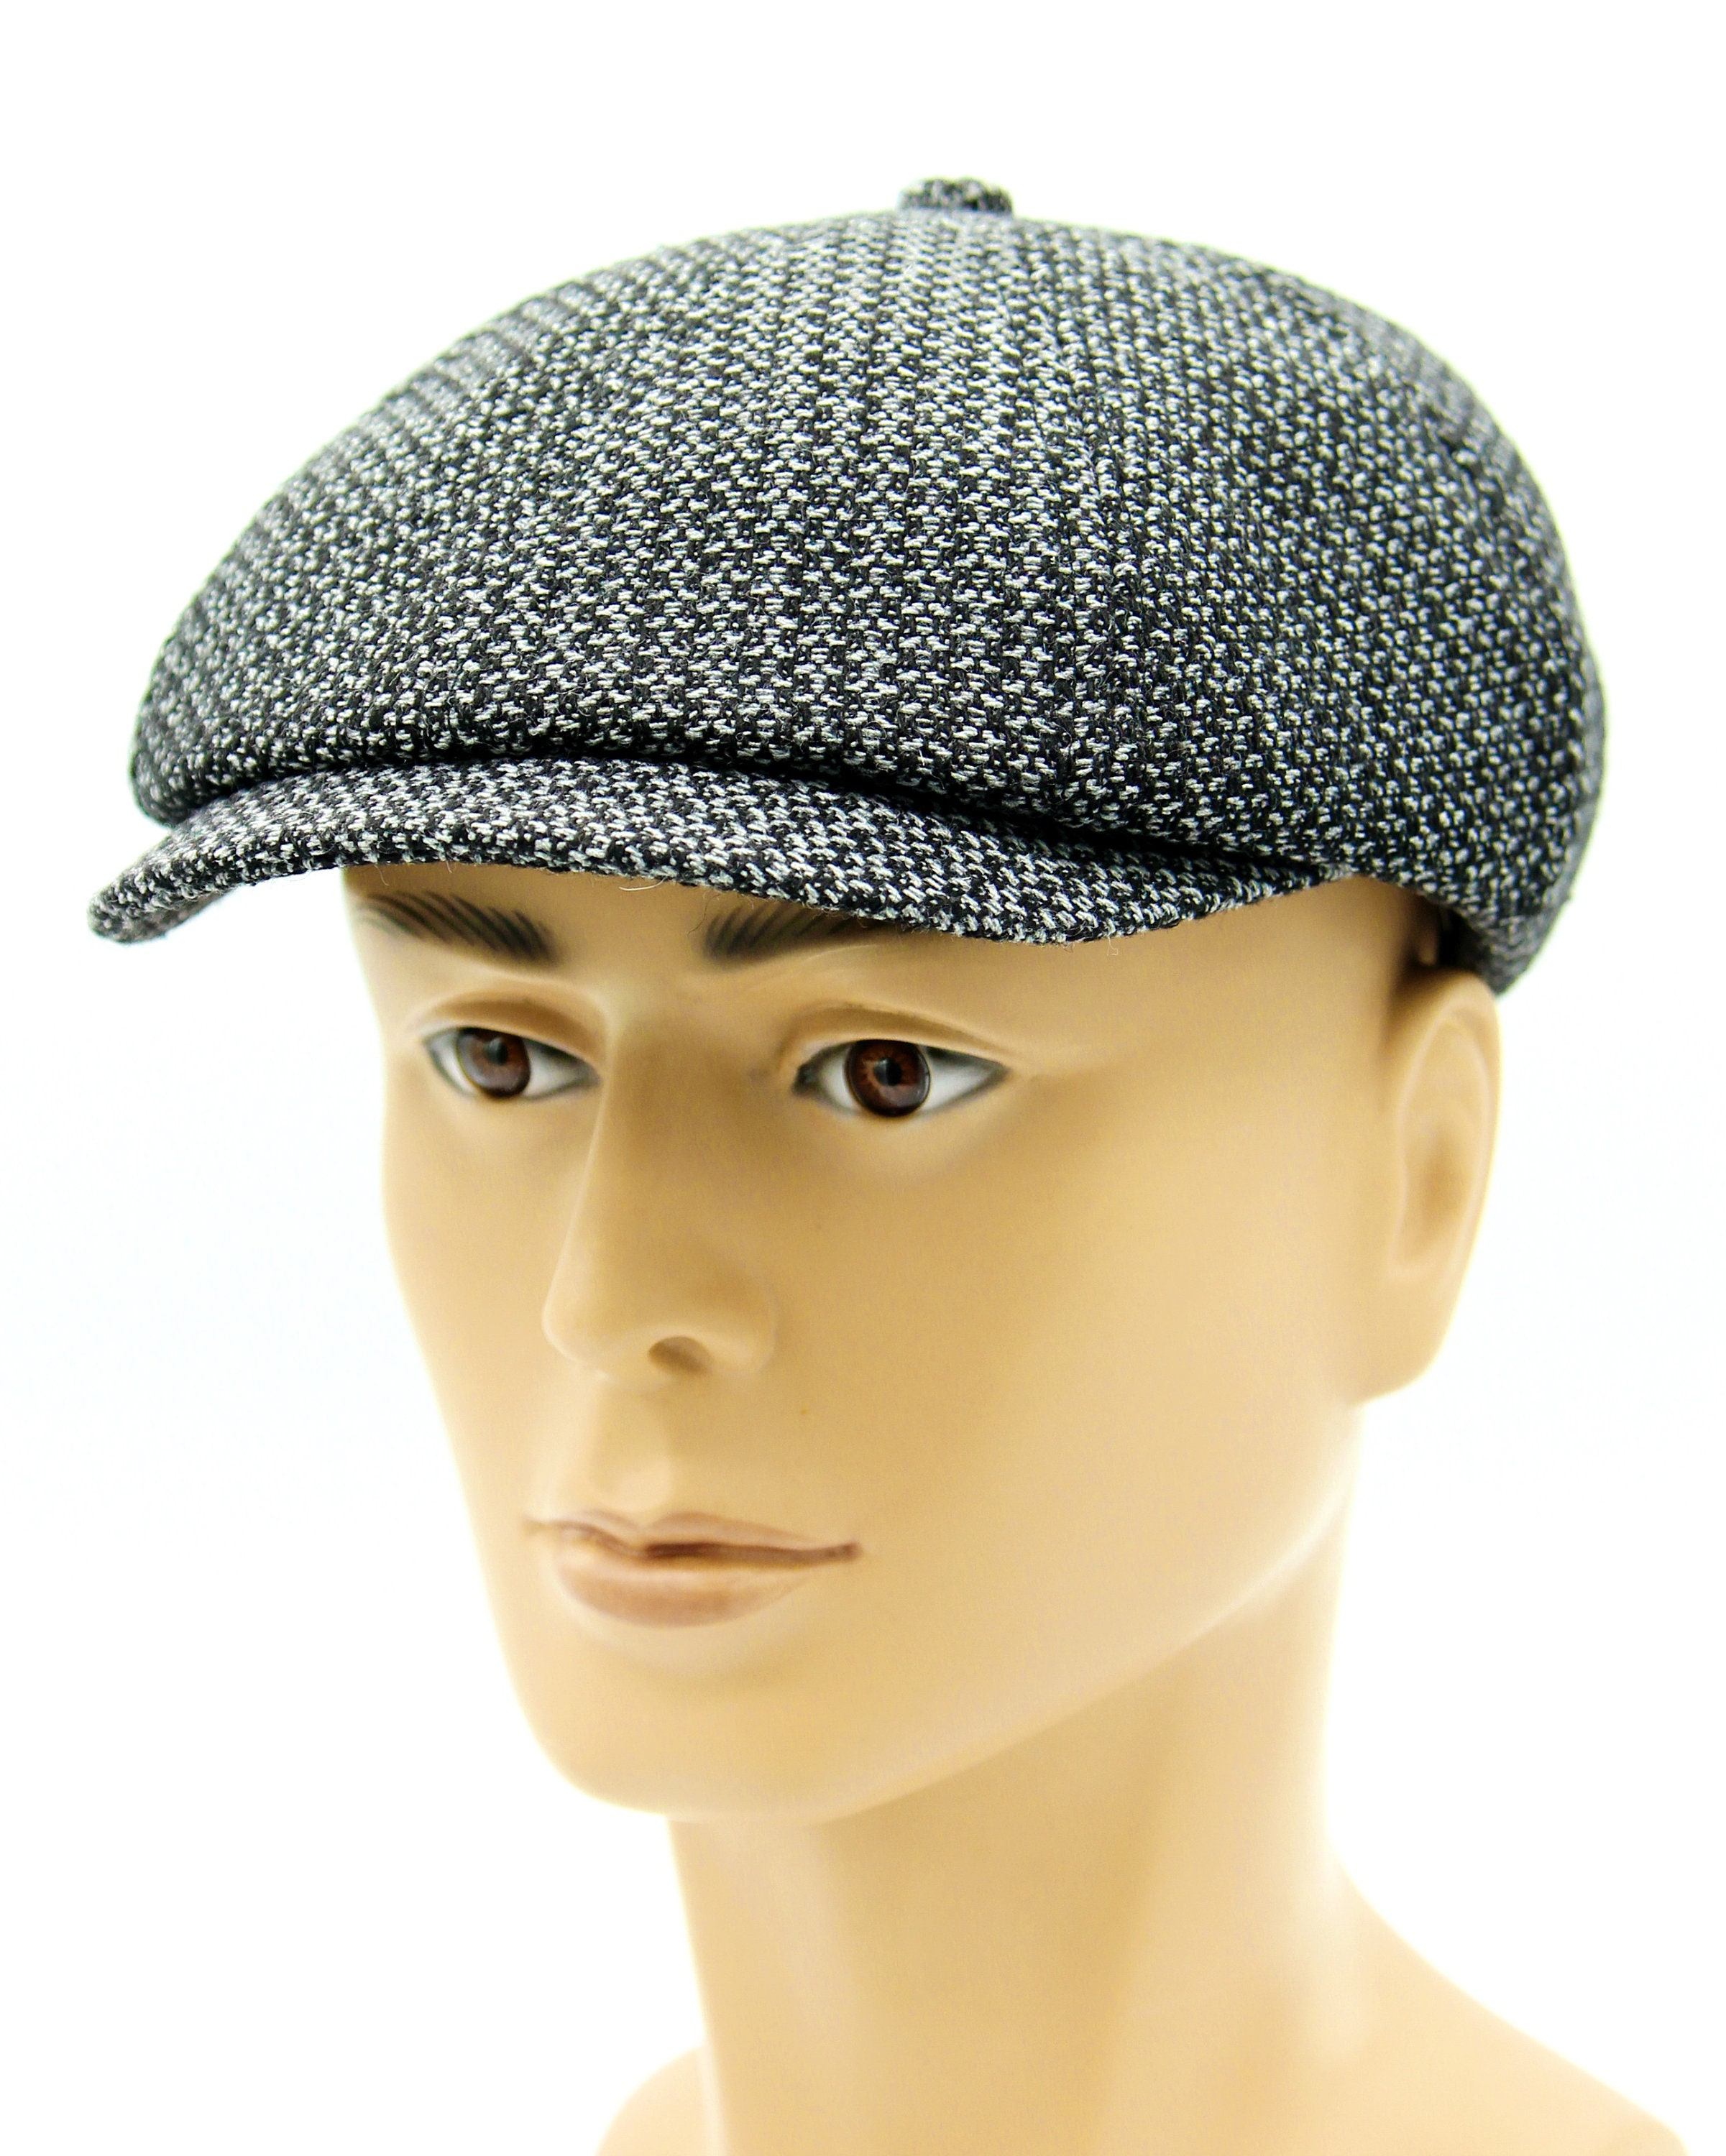 Men's newsboy slouchy hat | Etsy